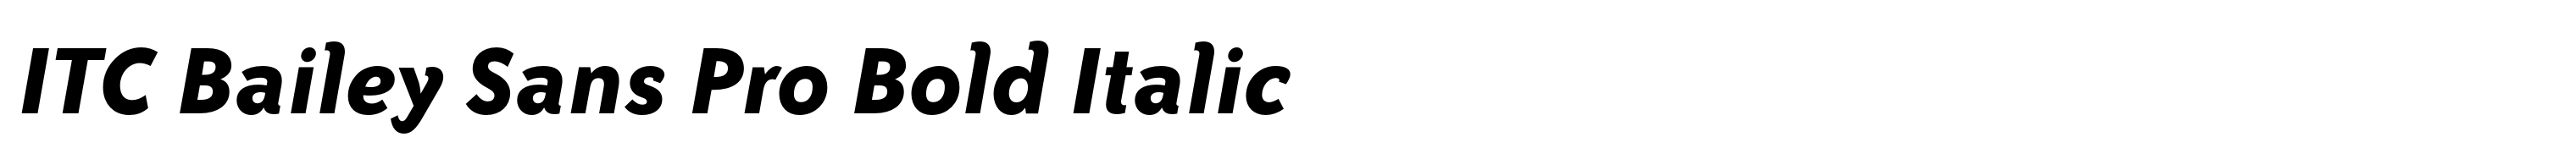 ITC Bailey Sans Pro Bold Italic